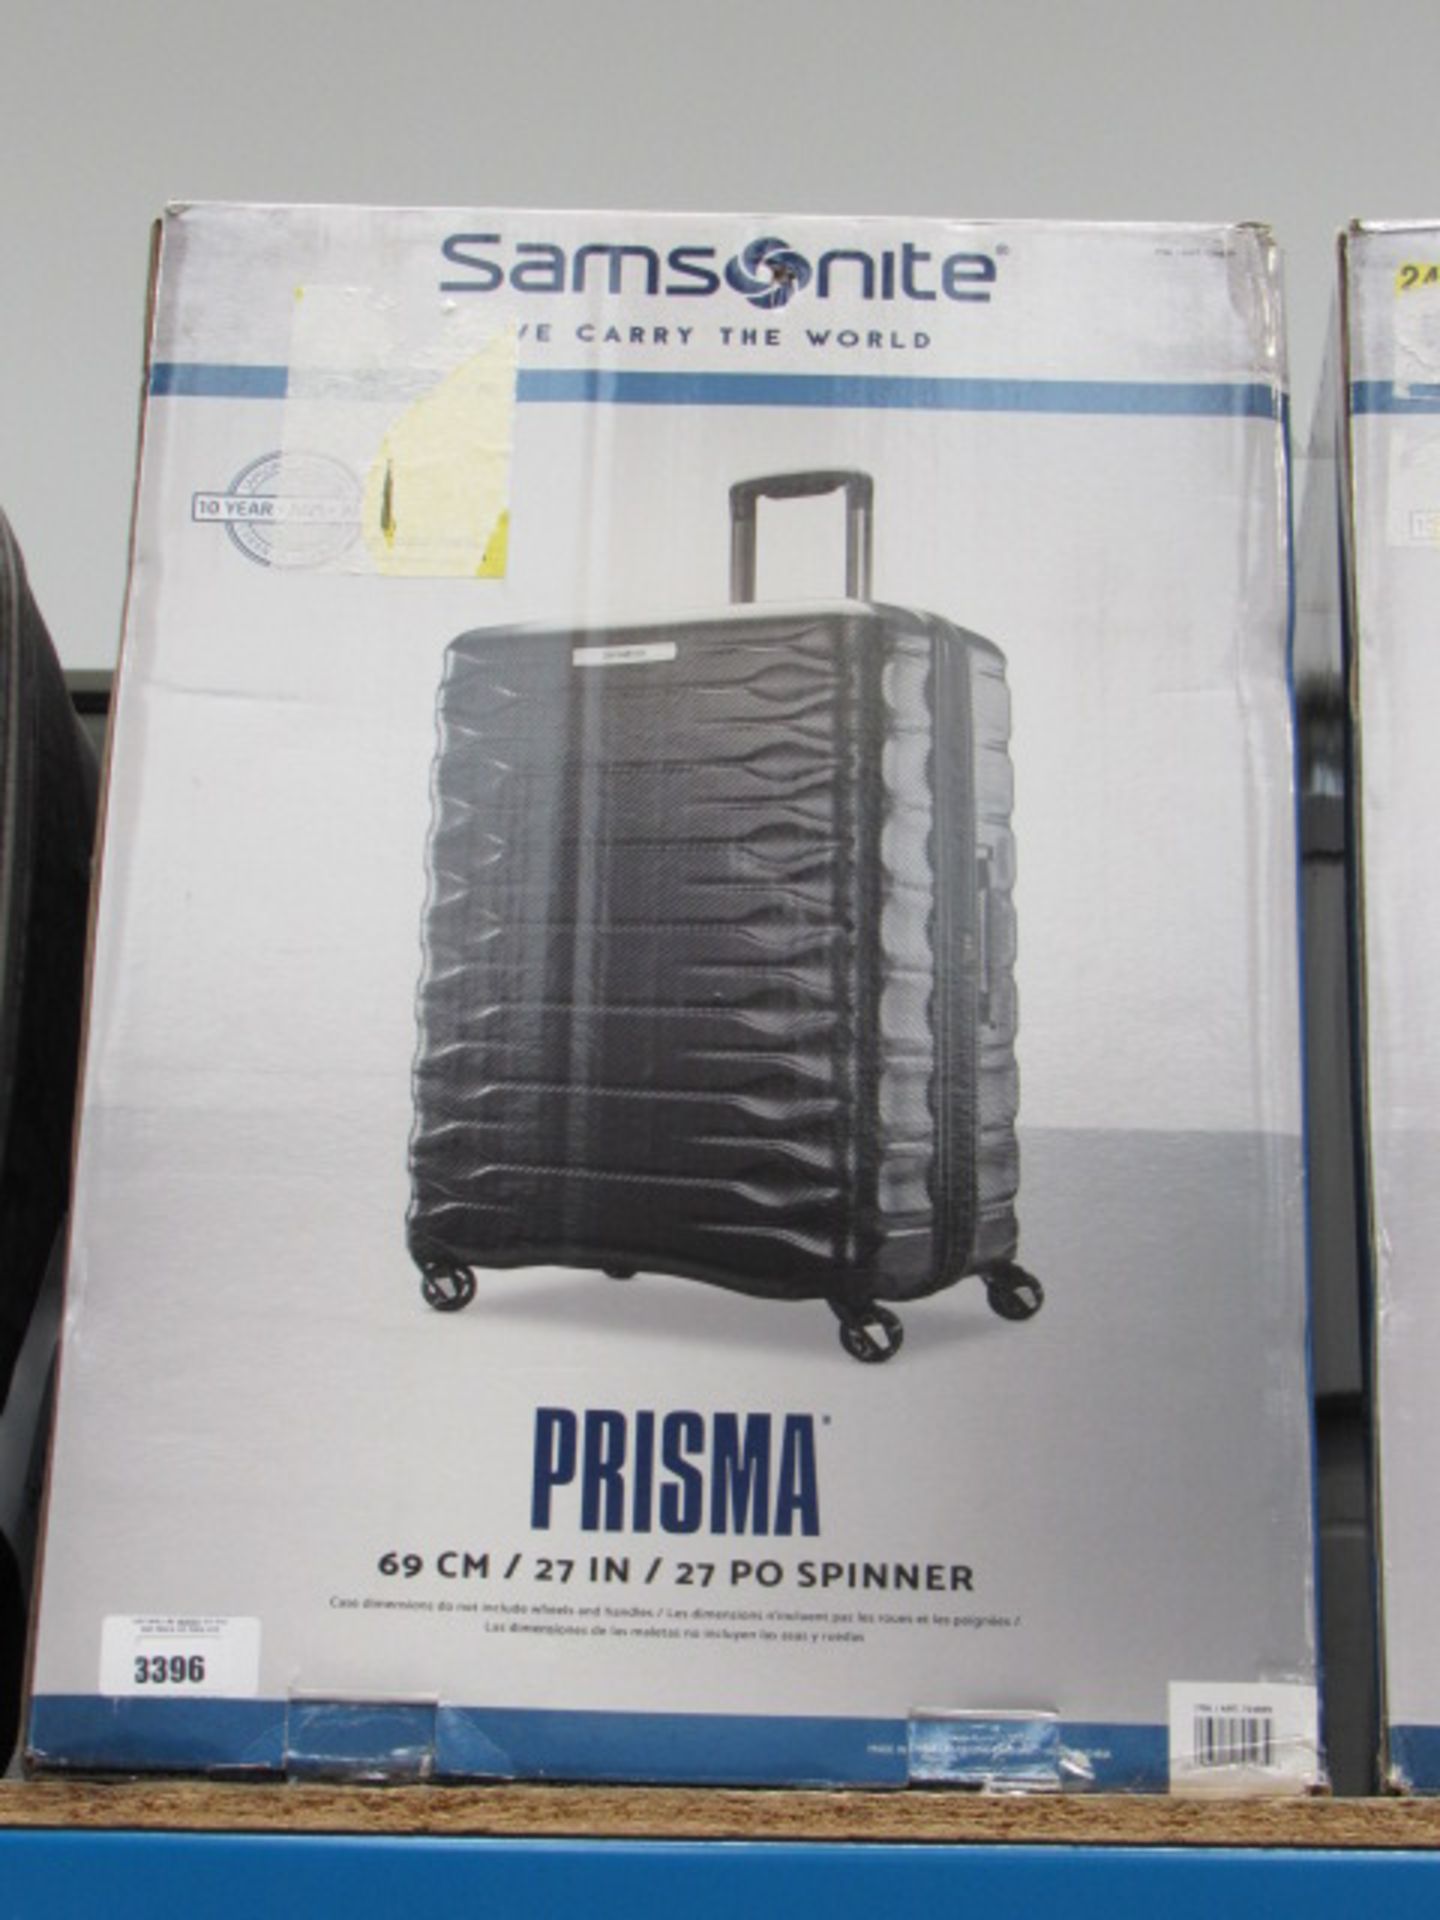 Large hard shelled Samsonite suitcase with box